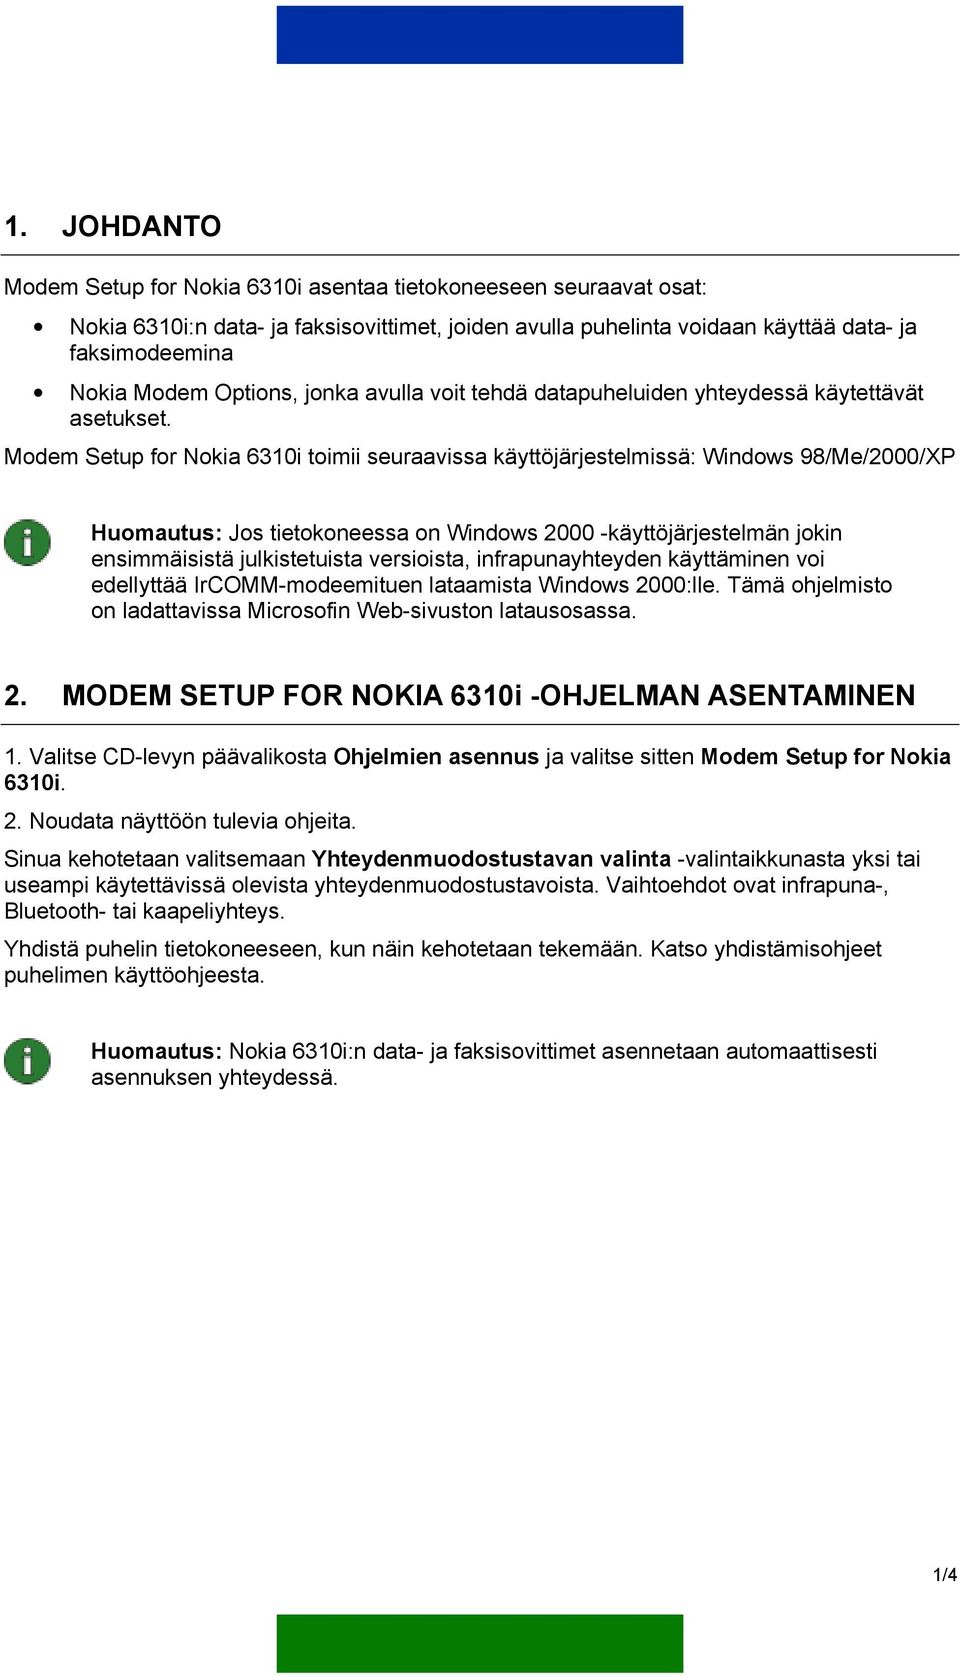 Modem Setup for Nokia 6310i toimii seuraavissa käyttöjärjestelmissä: Windows 98/Me/2000/XP Huomautus: Jos tietokoneessa on Windows 2000 -käyttöjärjestelmän jokin ensimmäisistä julkistetuista